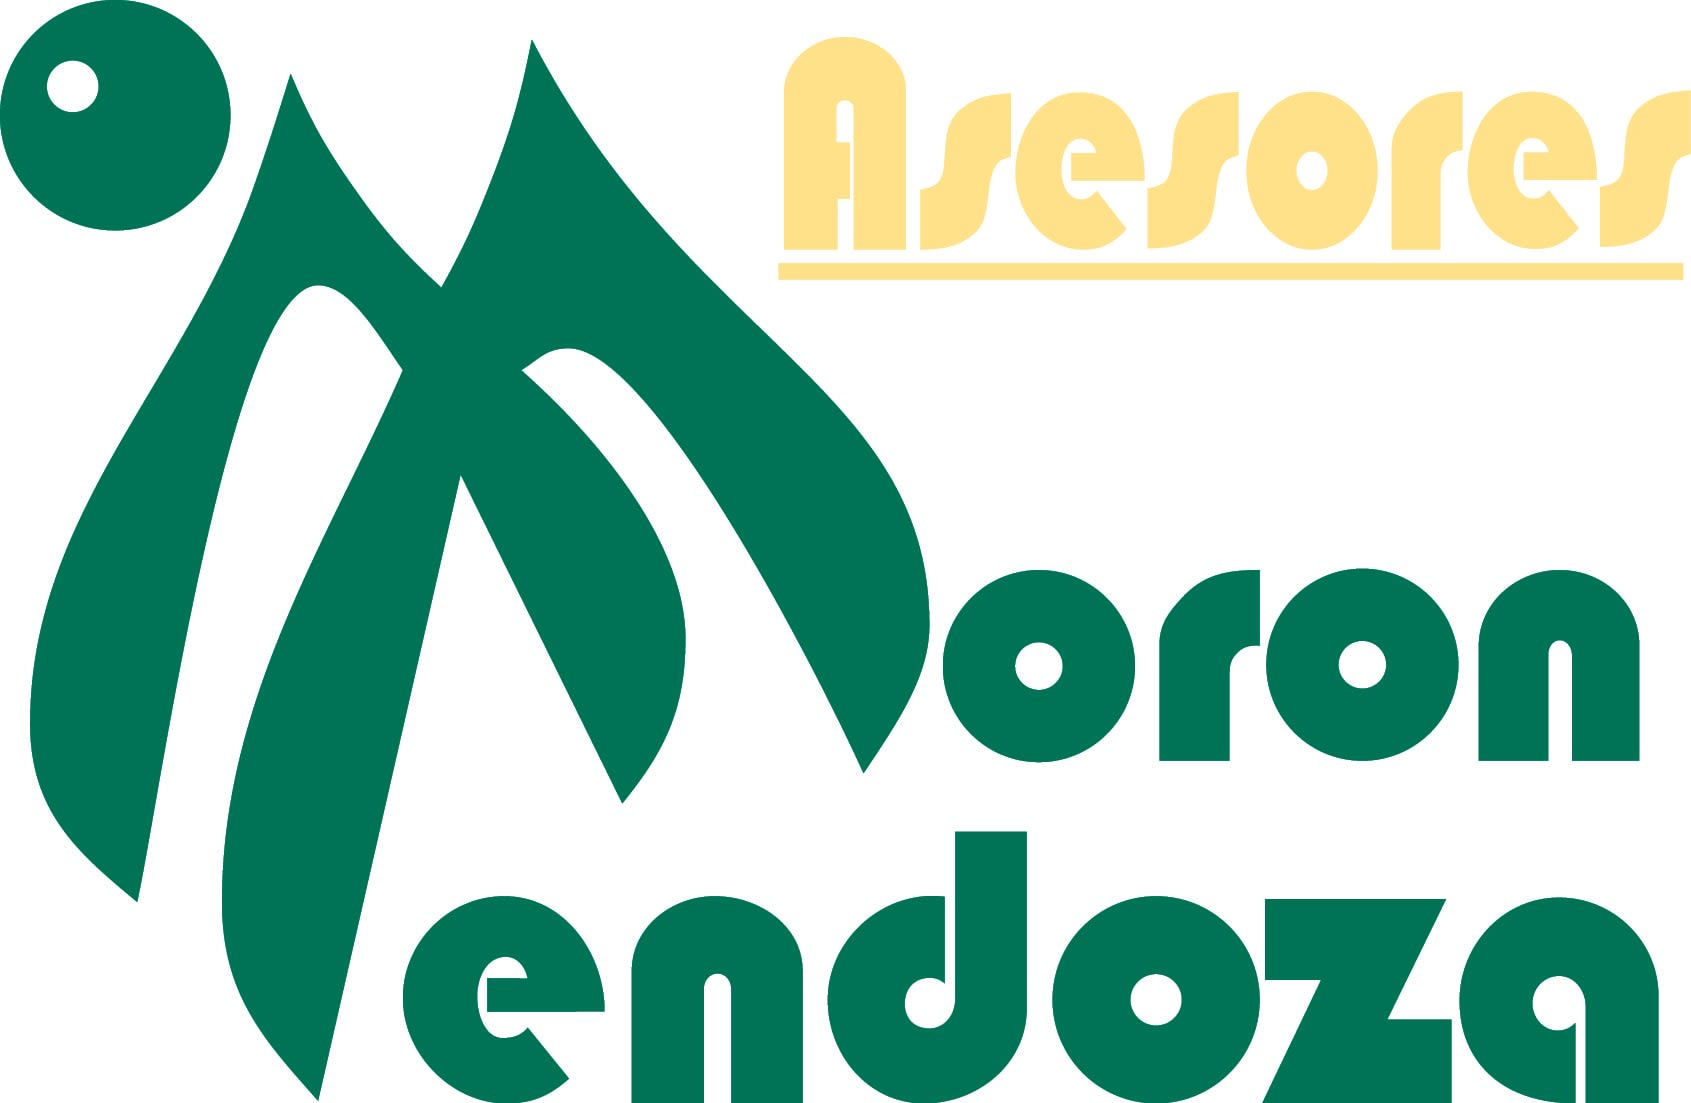 Asesores Moron Mendoza